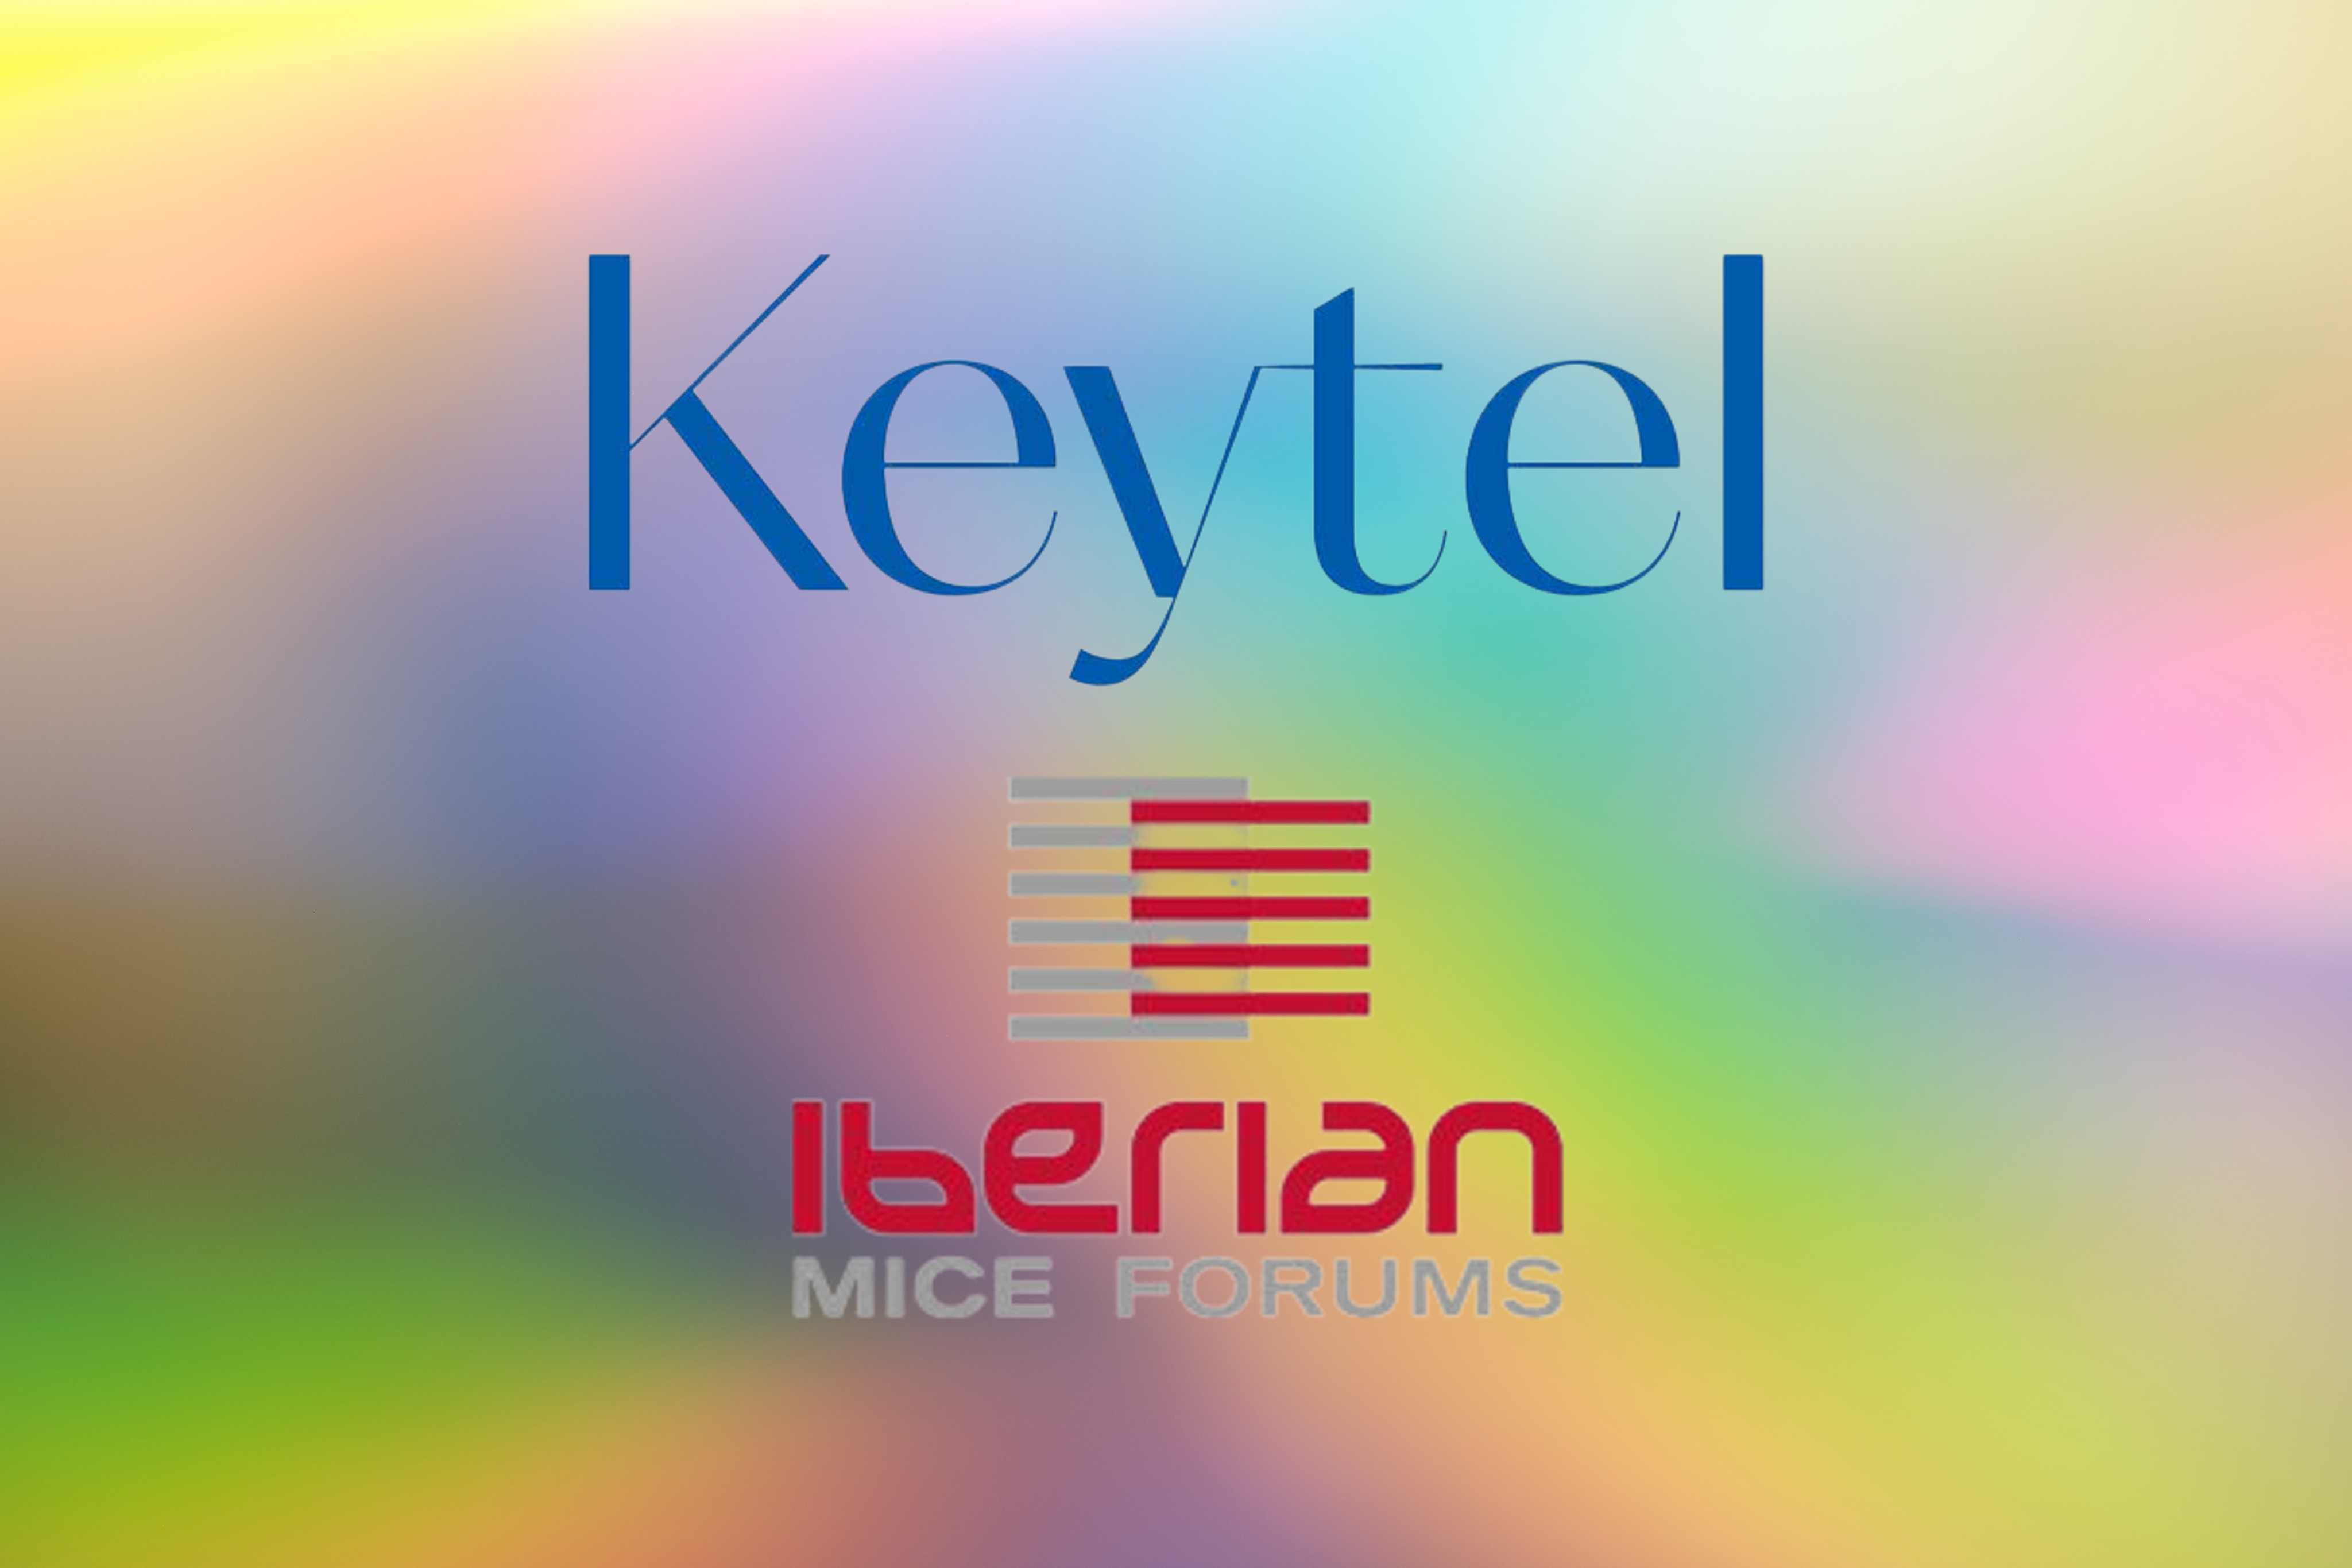 Keytel